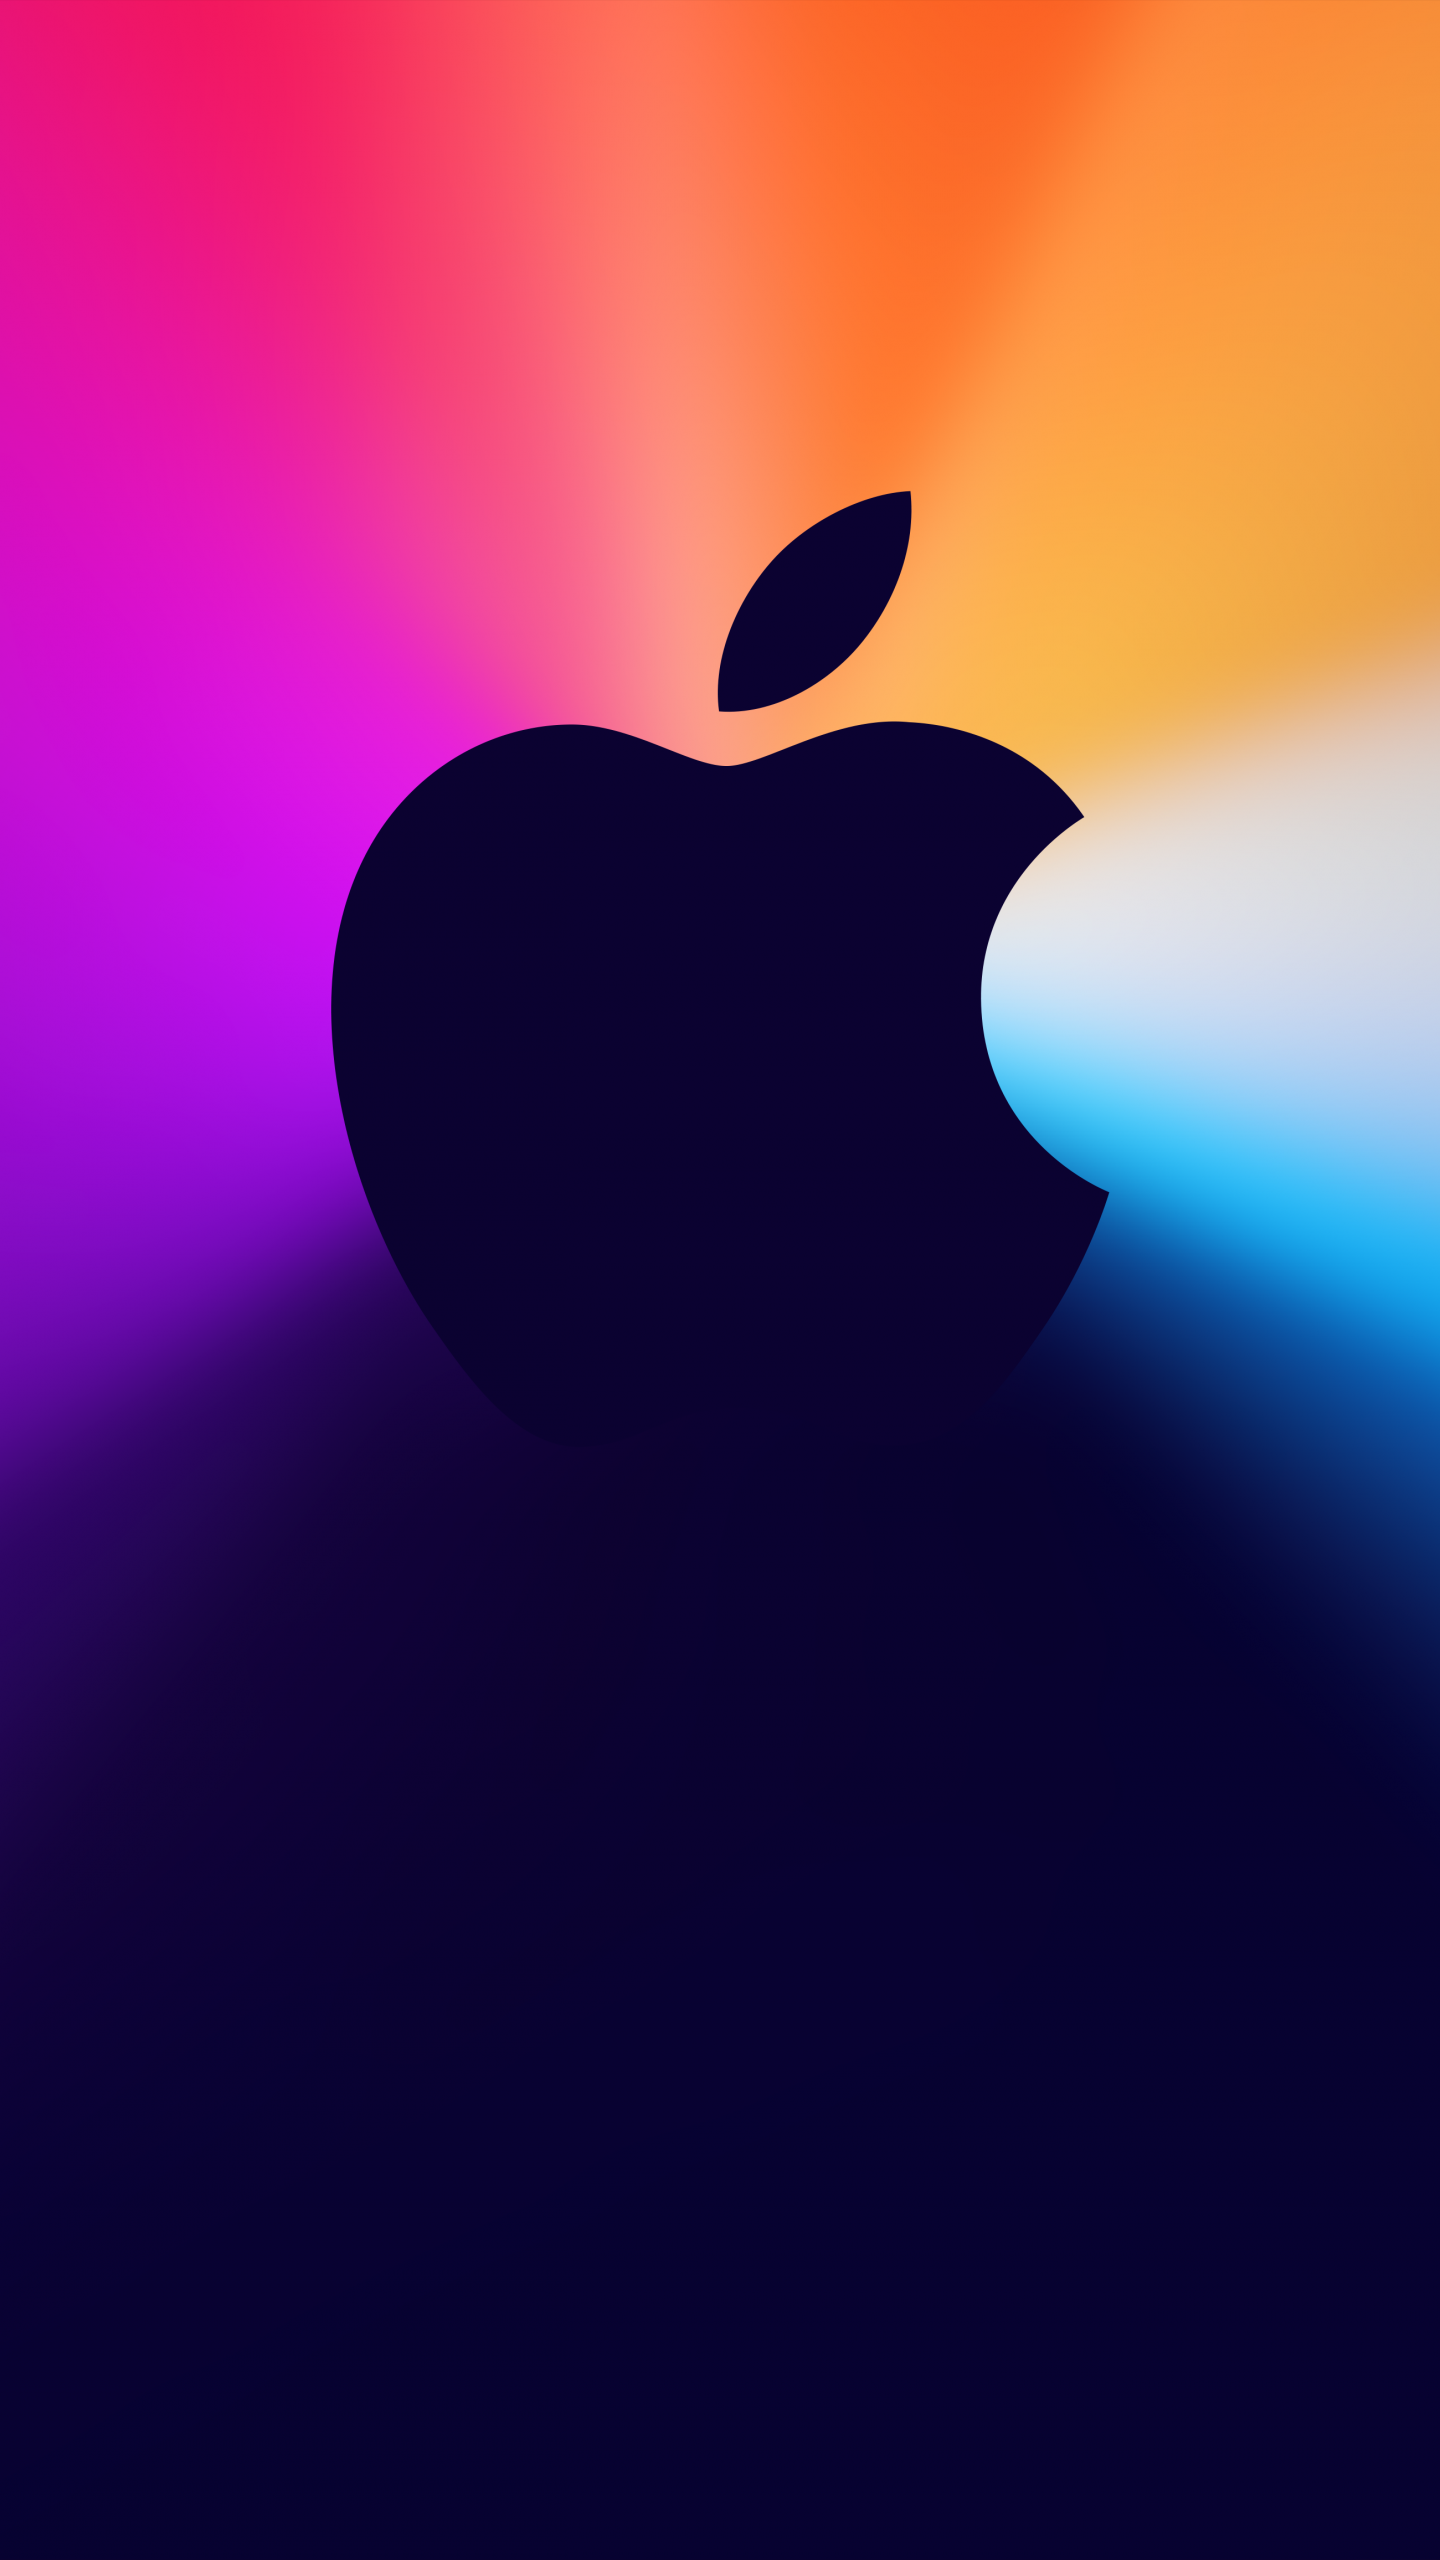 Hình nền gradient background 4K với logo Apple sẽ làm cho màn hình điện thoại của bạn trở nên độc đáo và đẹp mắt hơn. Với độ phân giải cao, bức ảnh rõ ràng và sống động, hình nền này là một sự lựa chọn tuyệt vời cho những ai yêu thích thương hiệu Apple và sự tối giản và sang trọng của gradient. Hãy thưởng thức hình ảnh như một tác phẩm nghệ thuật trên màn hình của bạn.